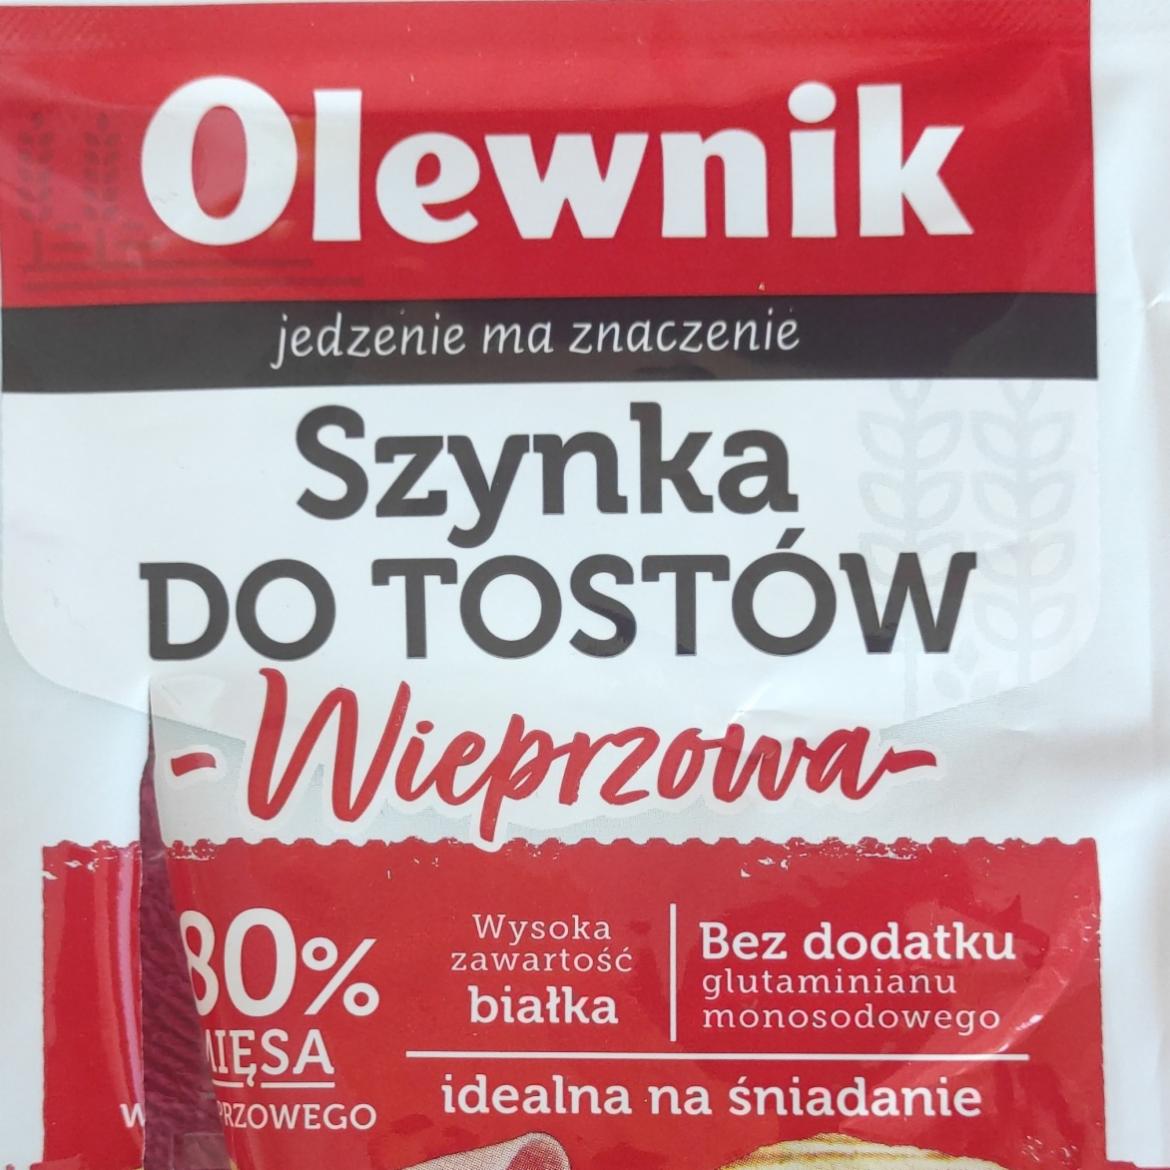 Фото - Ветчина из свинины для тостов Szynka Wieprzowa Olewnik